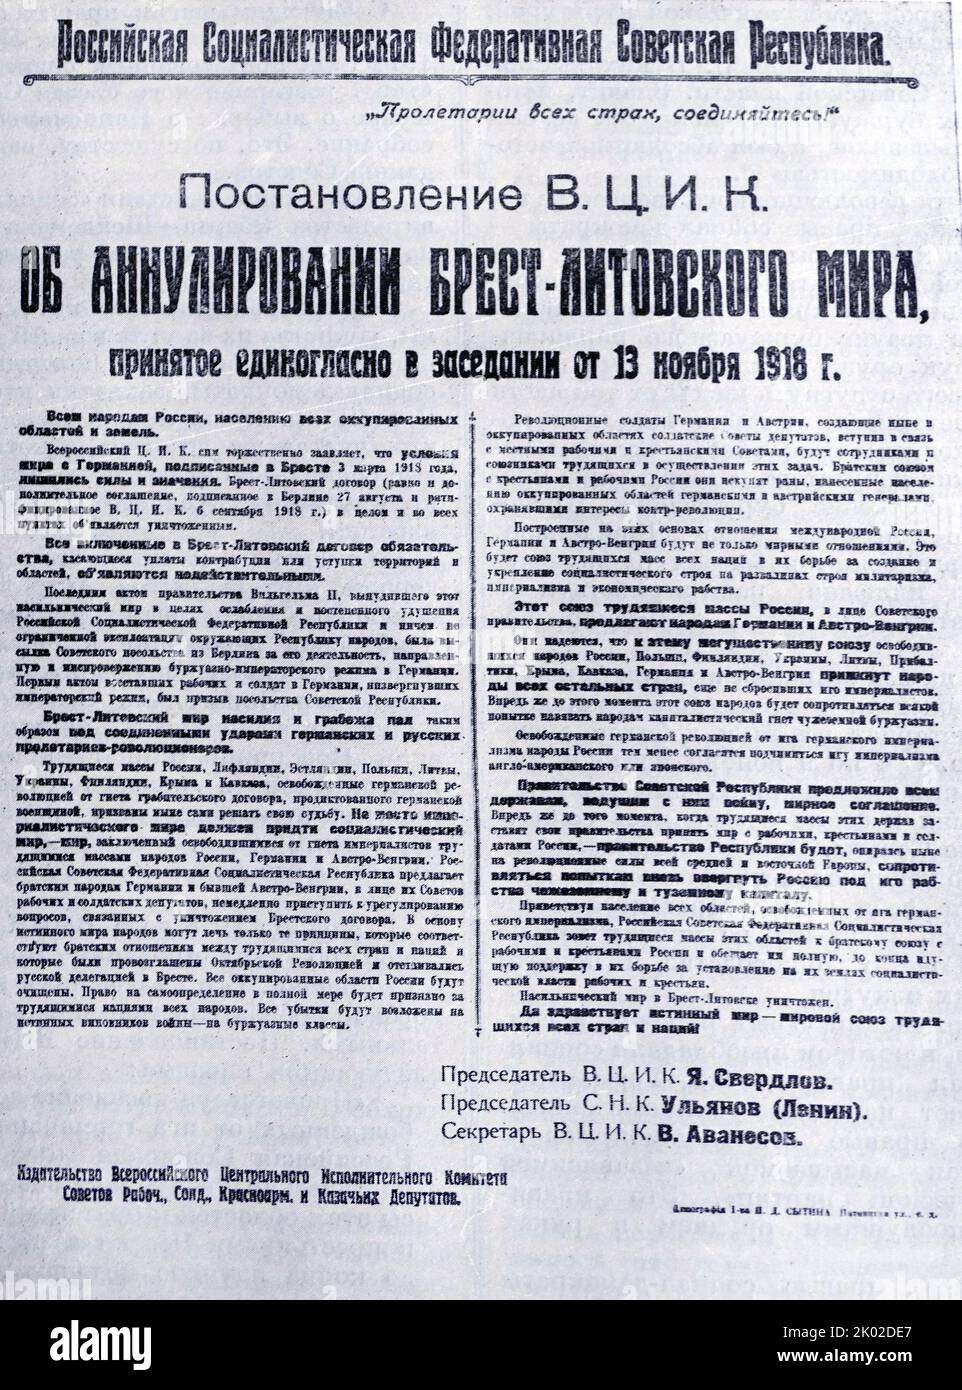 Decreto del Comitato esecutivo centrale russo sull'annullamento del trattato di pace di Brest-Litovsk. 13 novembre 1918.&#13;&#10; Foto Stock